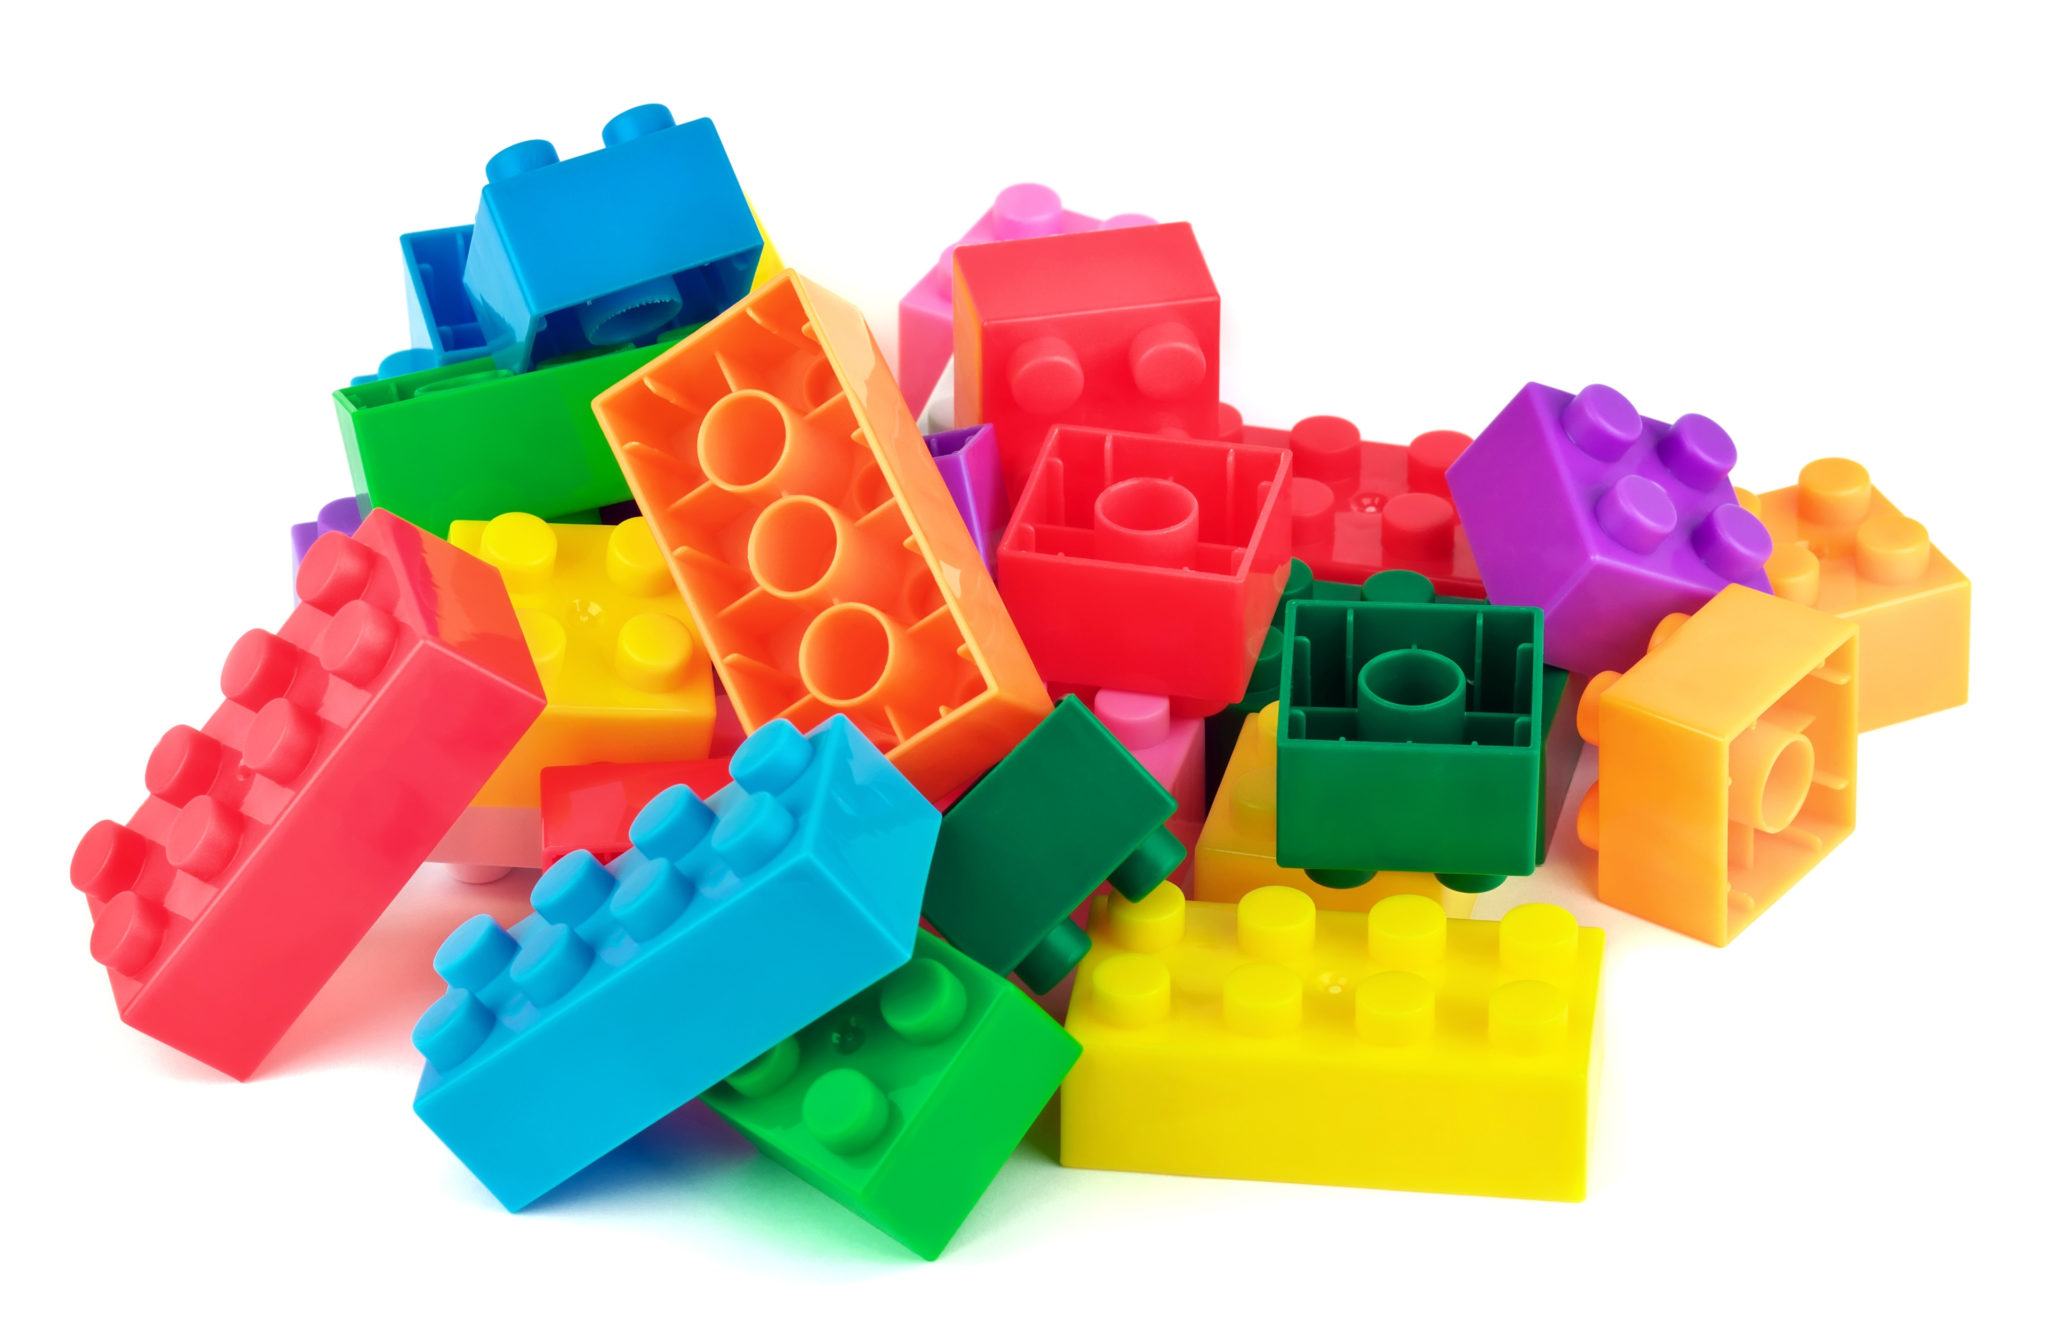 voering Beginner kom tot rust Coderen met LEGO - Leukekinderactiviteiten.nl